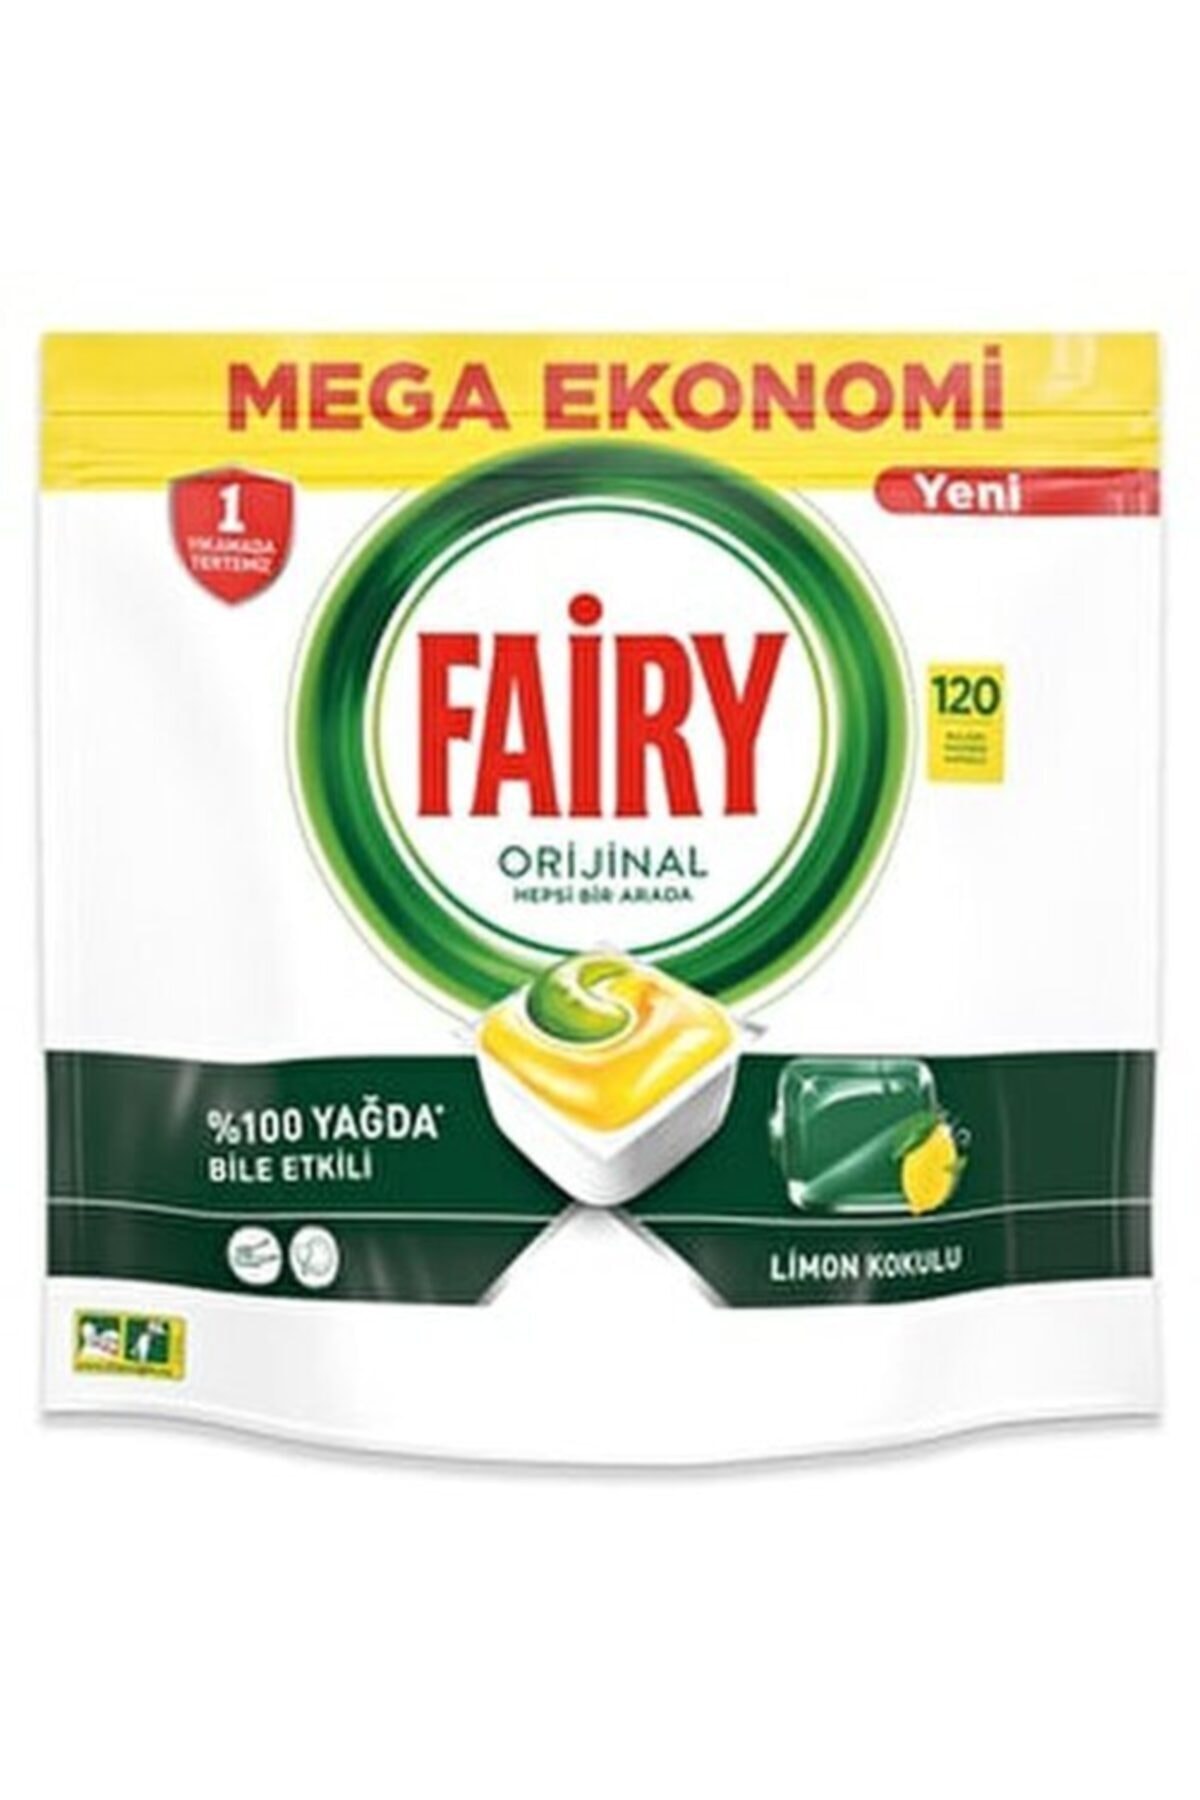 Fairy Hepsi Bir Arada Bulaşık Makinesi Deterjanı Kapsülü Limon Kokulu 120 Li Kapsül